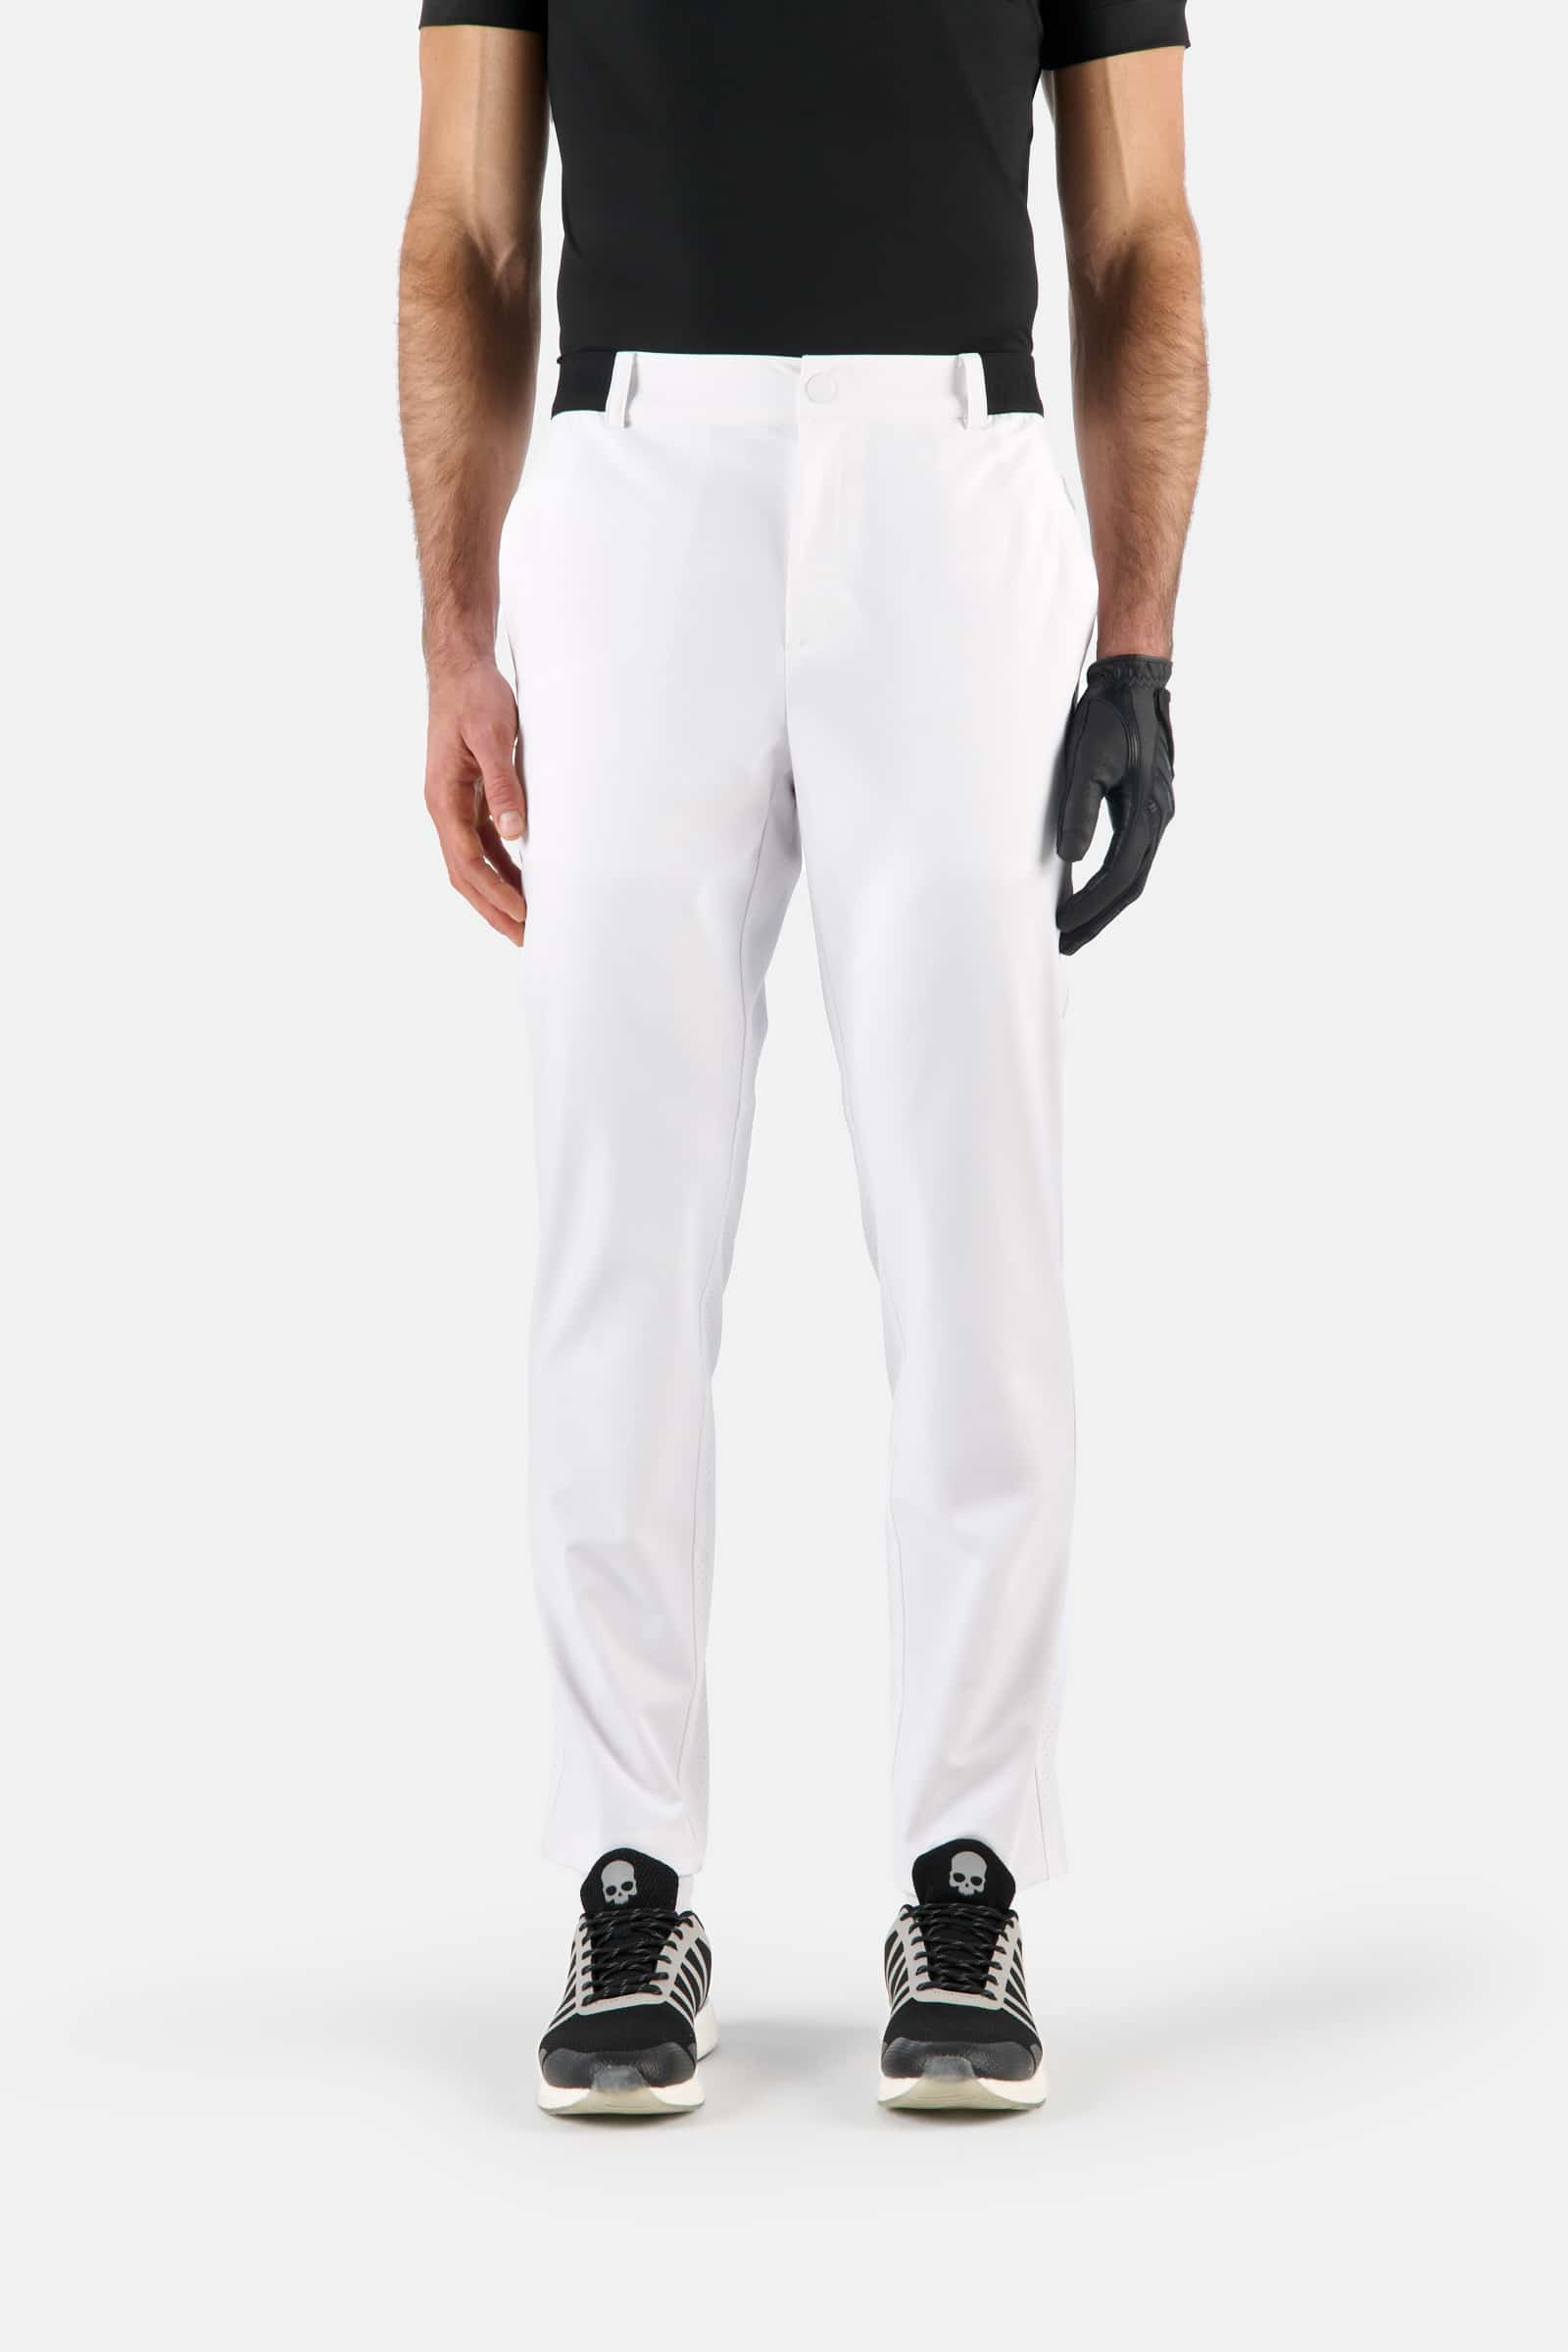 TECH PANTS - Apparel - Hydrogen - Luxury Sportwear